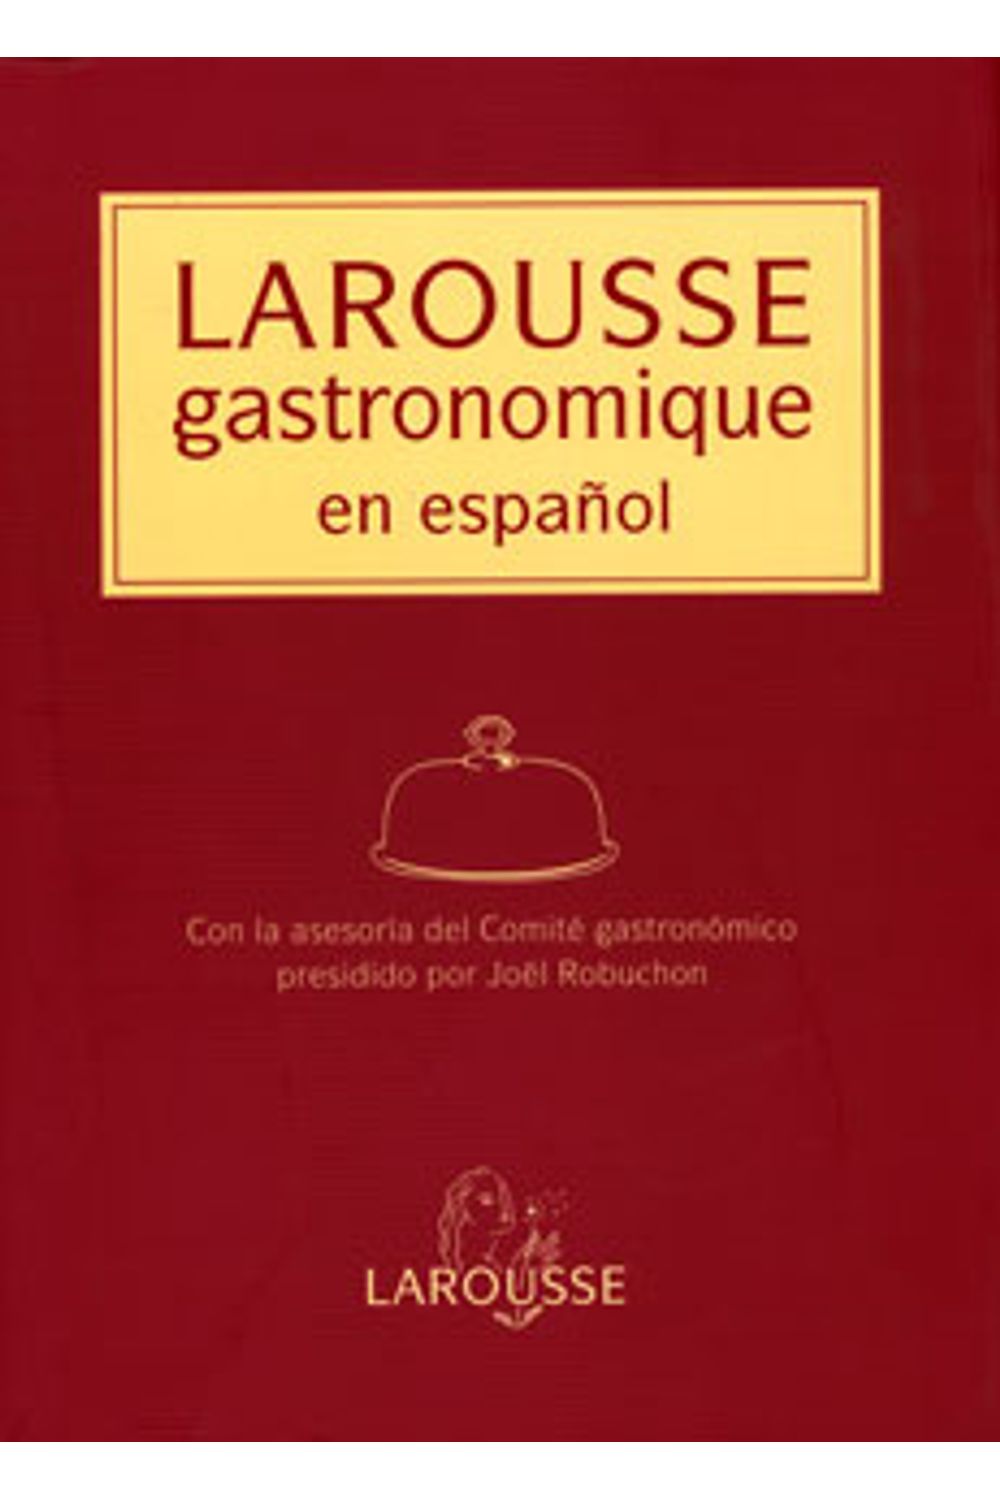 Diccionario-Larousse-gastronomique-español